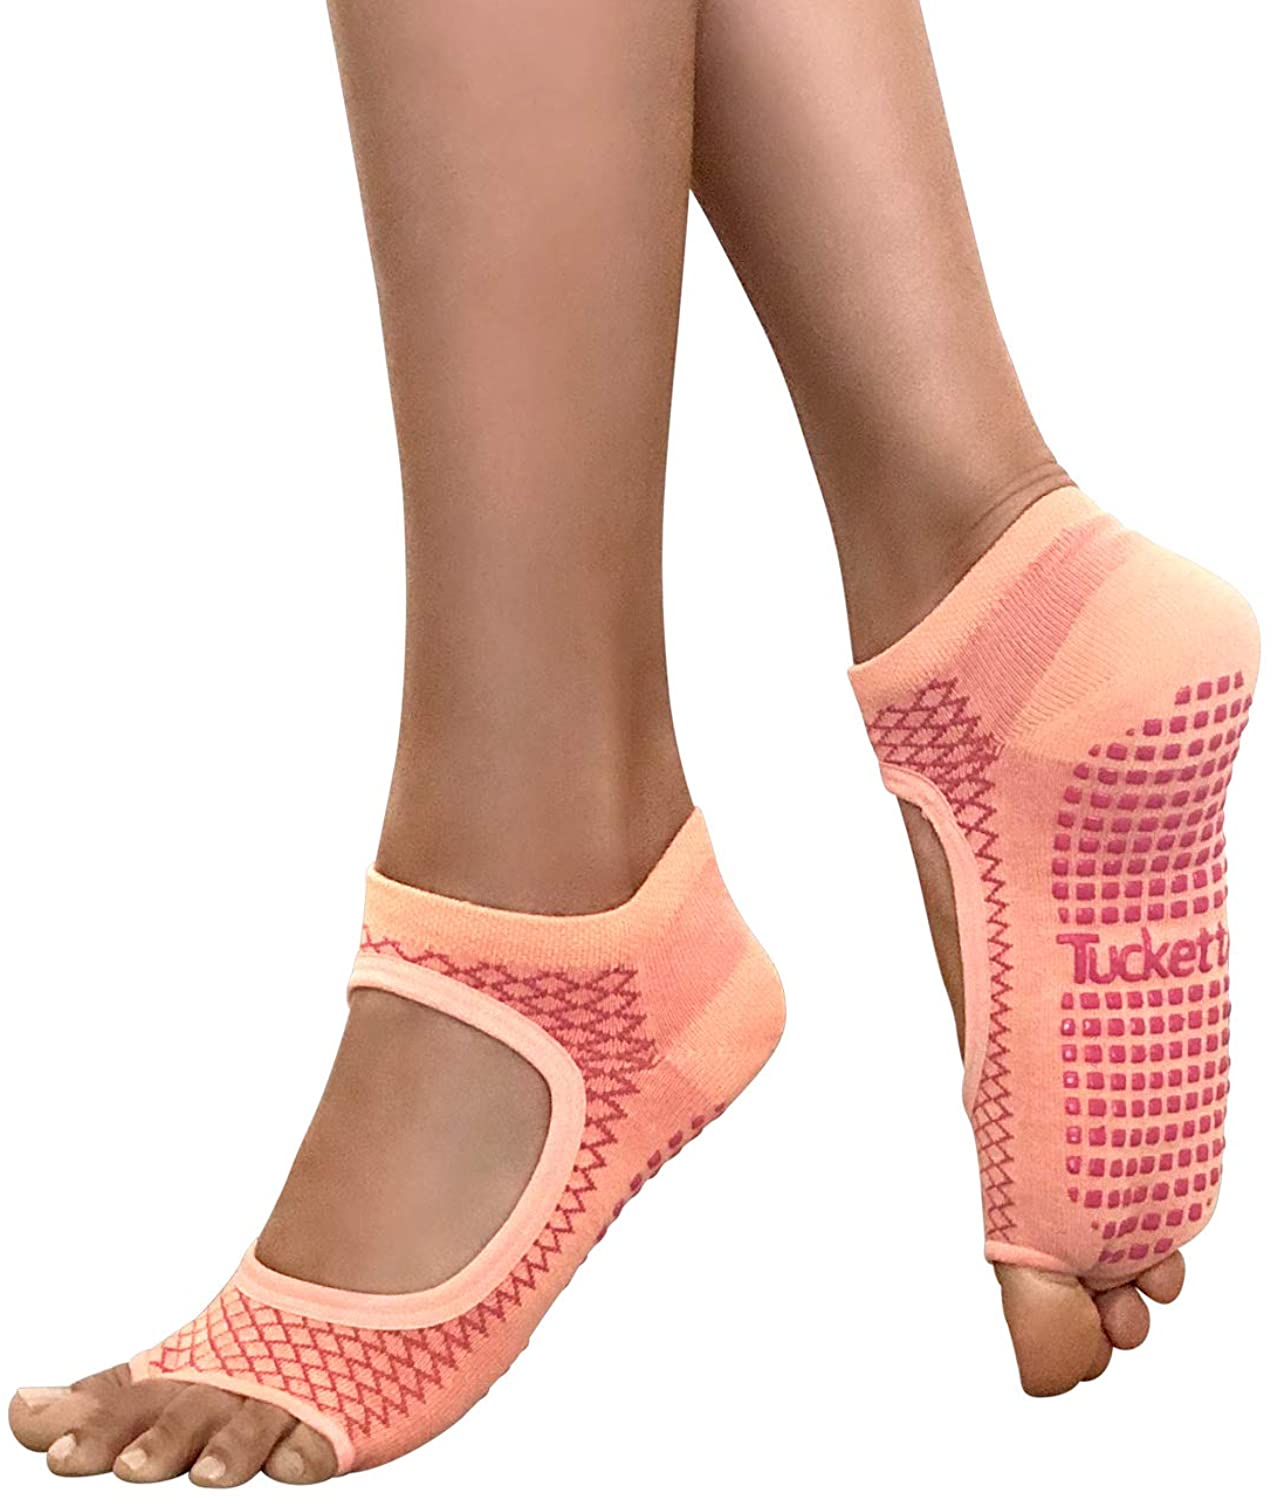 Geyoga 6 pares de calcetines de yoga para mujer, calcetines antideslizantes  con correas, calcetines de ballet para yoga, pilates, ballet, barre, danza